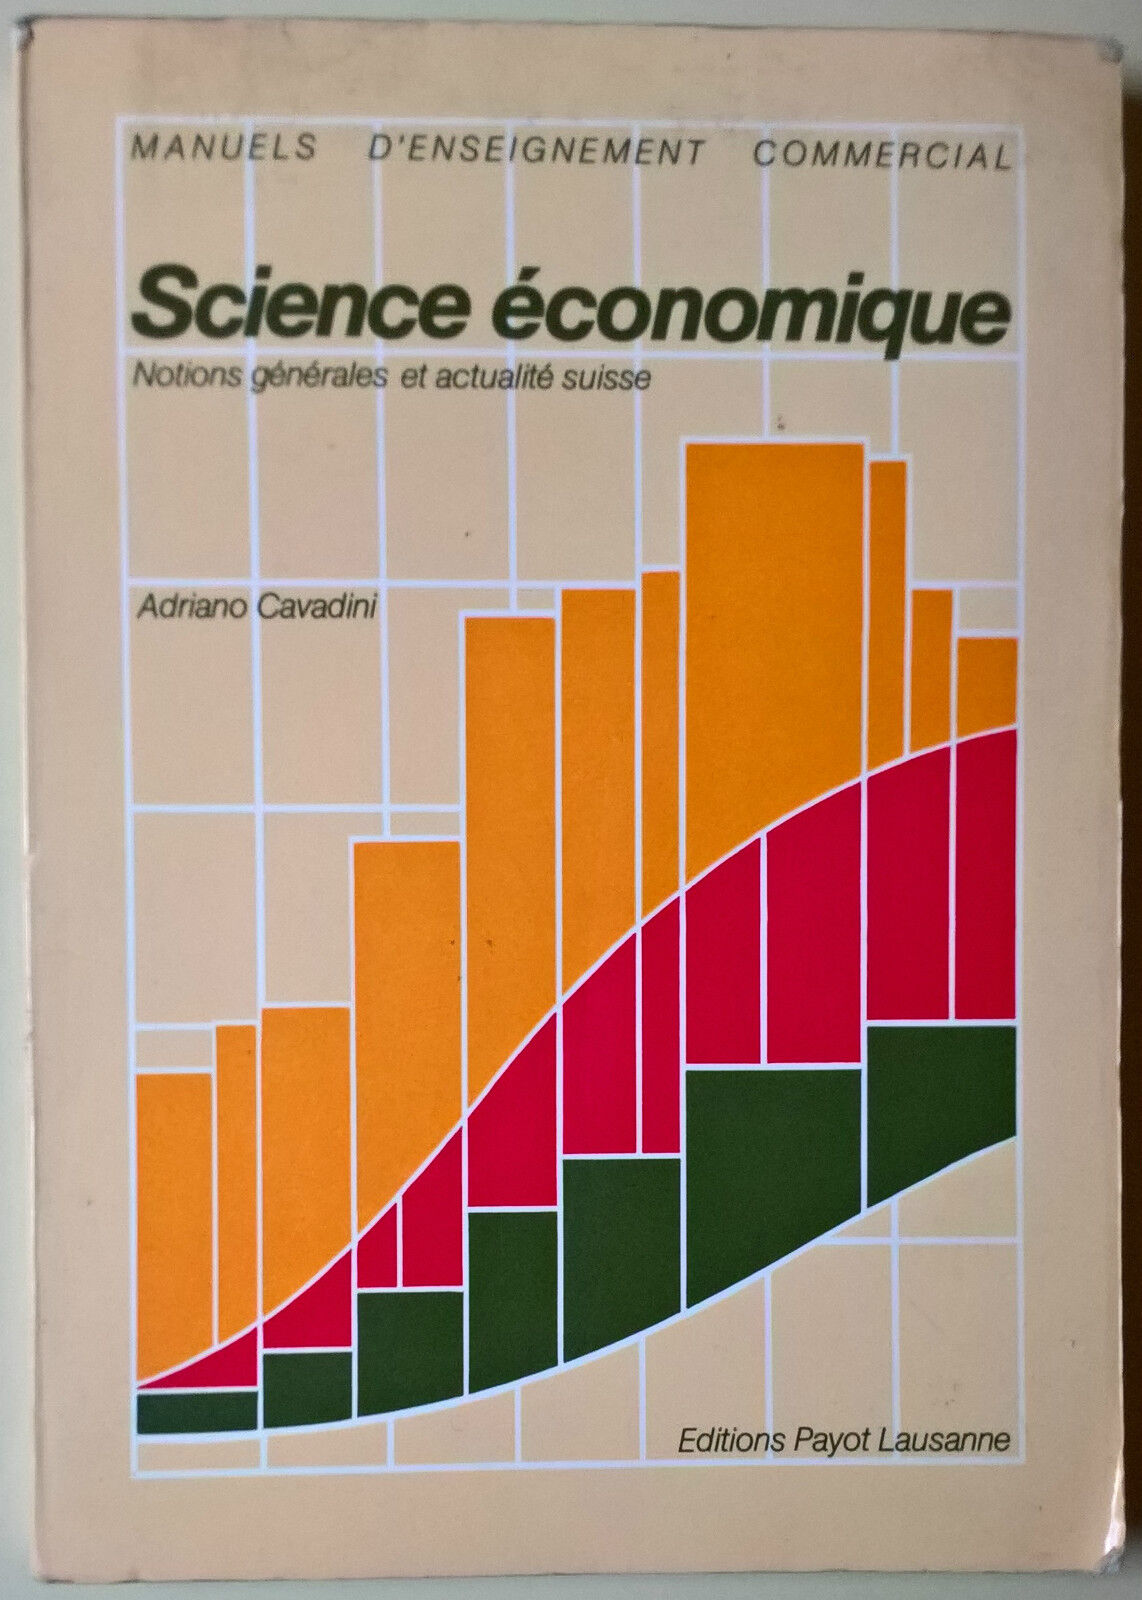 Science ?conomique - Adriano Cavadini - 1984, Payot Lausanne - L